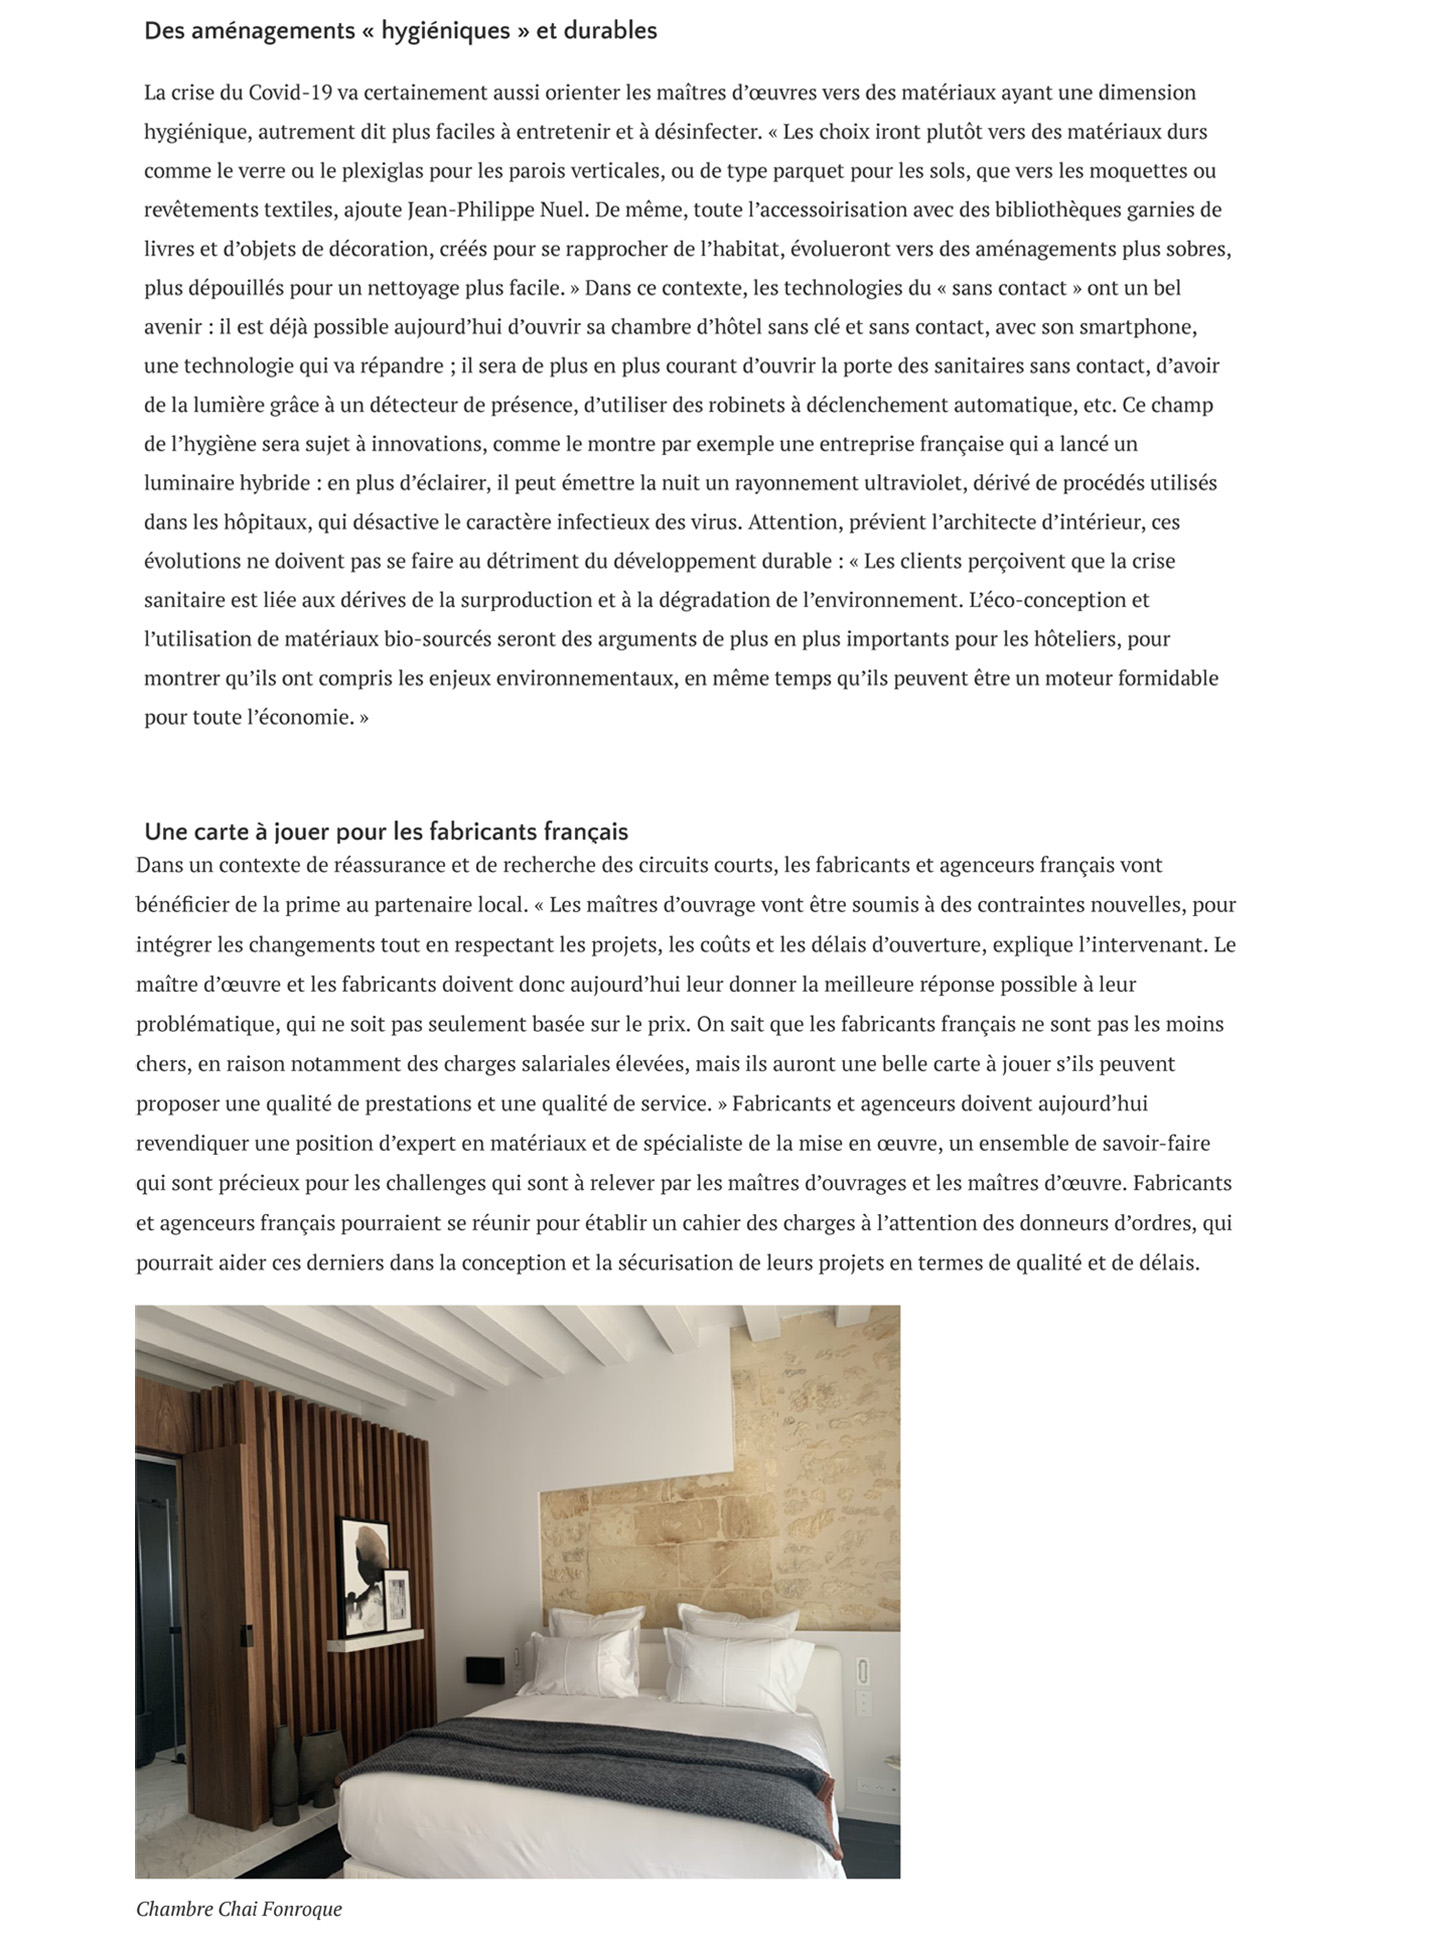 Article sur l'architecte et décorateur Jean-Philippe Nuel et sa vision du monde de l'hôtellerie après covid dans le magazine Archicree